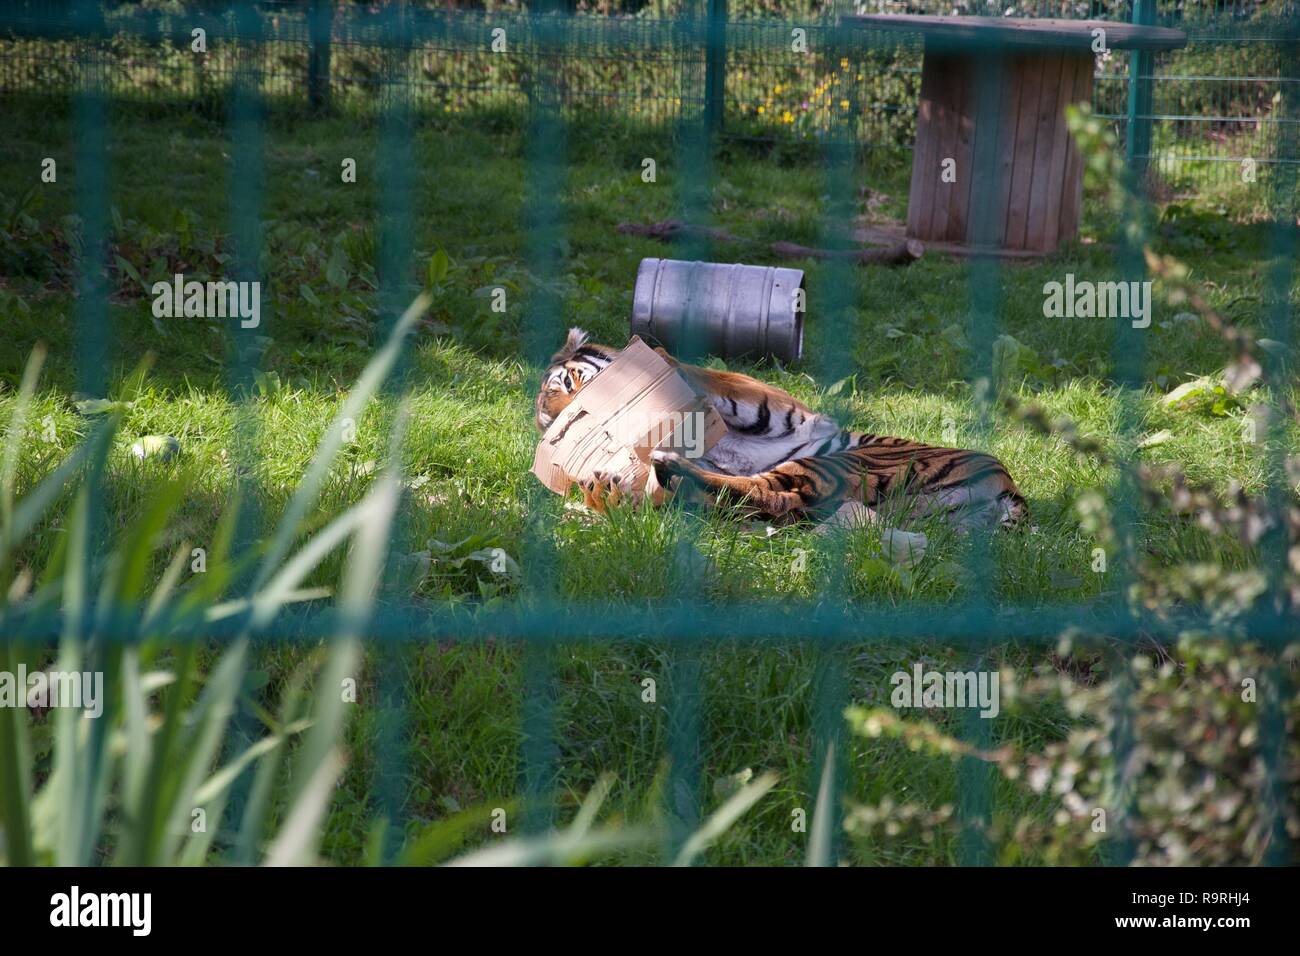 Un tigre dans une enceinte joue avec une boîte en carton comme un gros chaton, roulant sur le sol, lancer à travers les barreaux de son enclos Banque D'Images